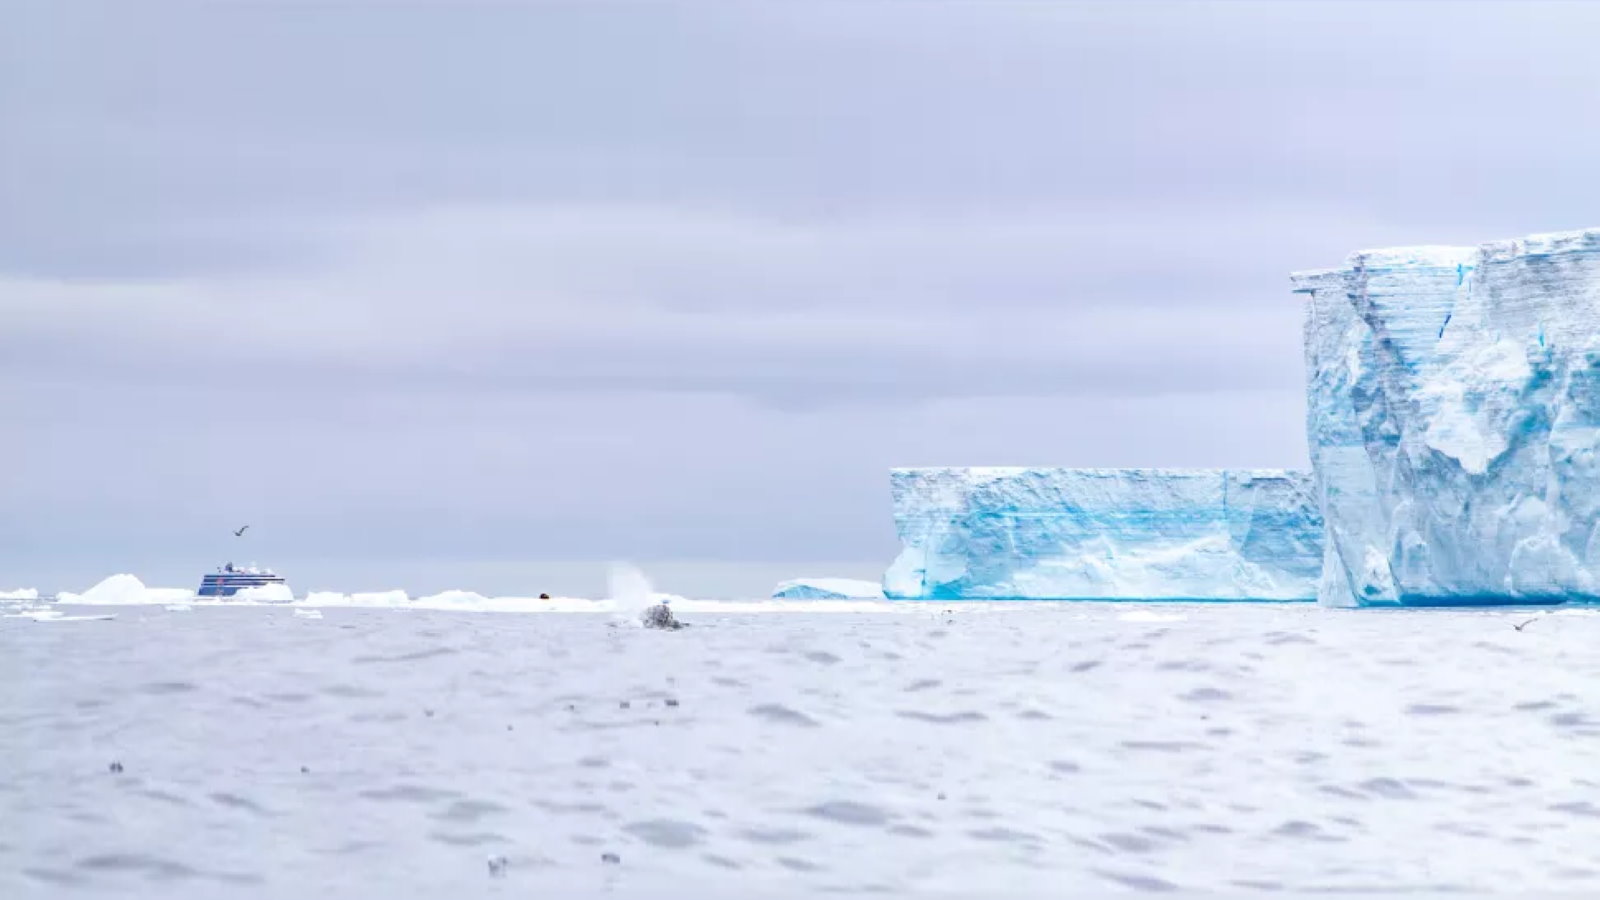 Експедиційний корабель "Експлорер" наближається до краю айсберга A-68a  © Henry Páll Wulff, CC BY 4.0